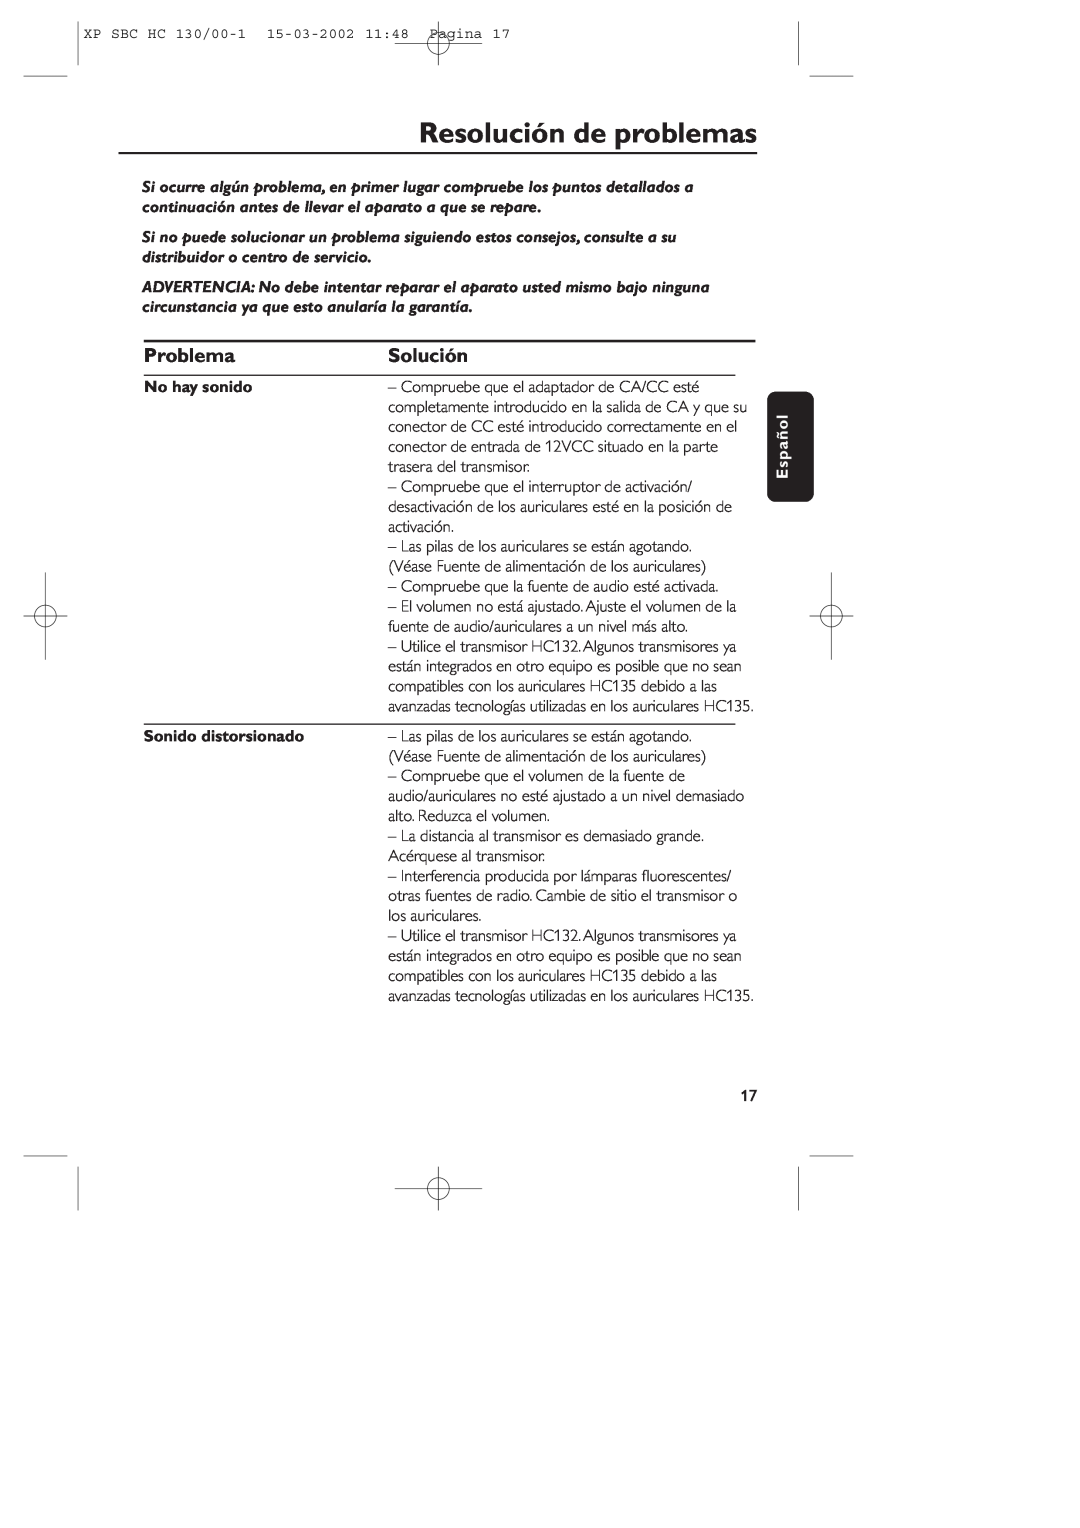 Philips SBC HC130 manual Resolución de problemas, Problema, Solución, No hay sonido, Sonido distorsionado, Español 